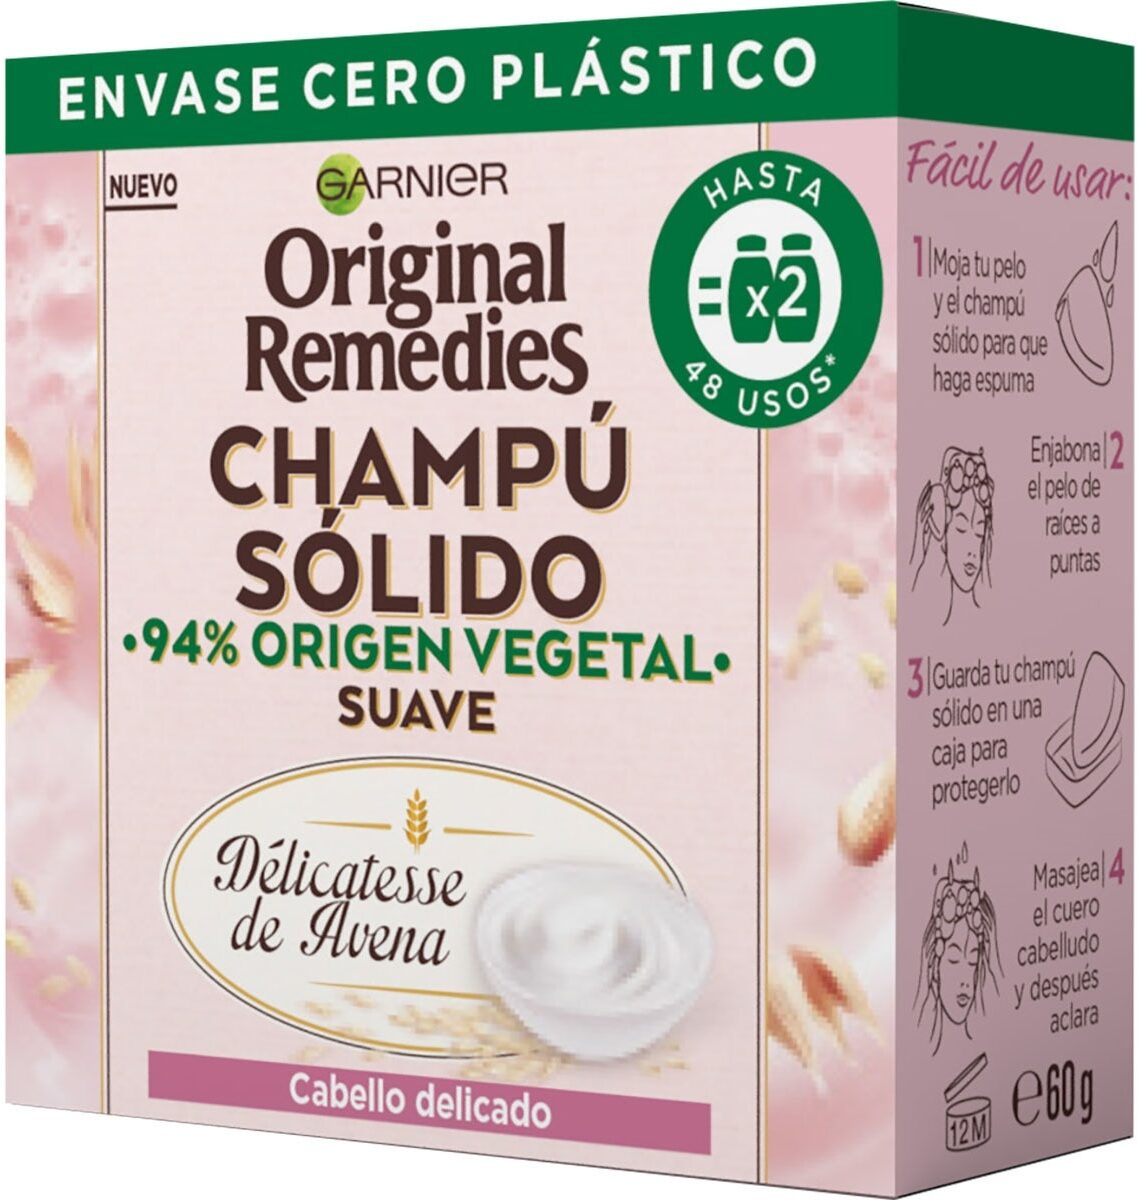 Original remedies champú solido avena - Producto - en